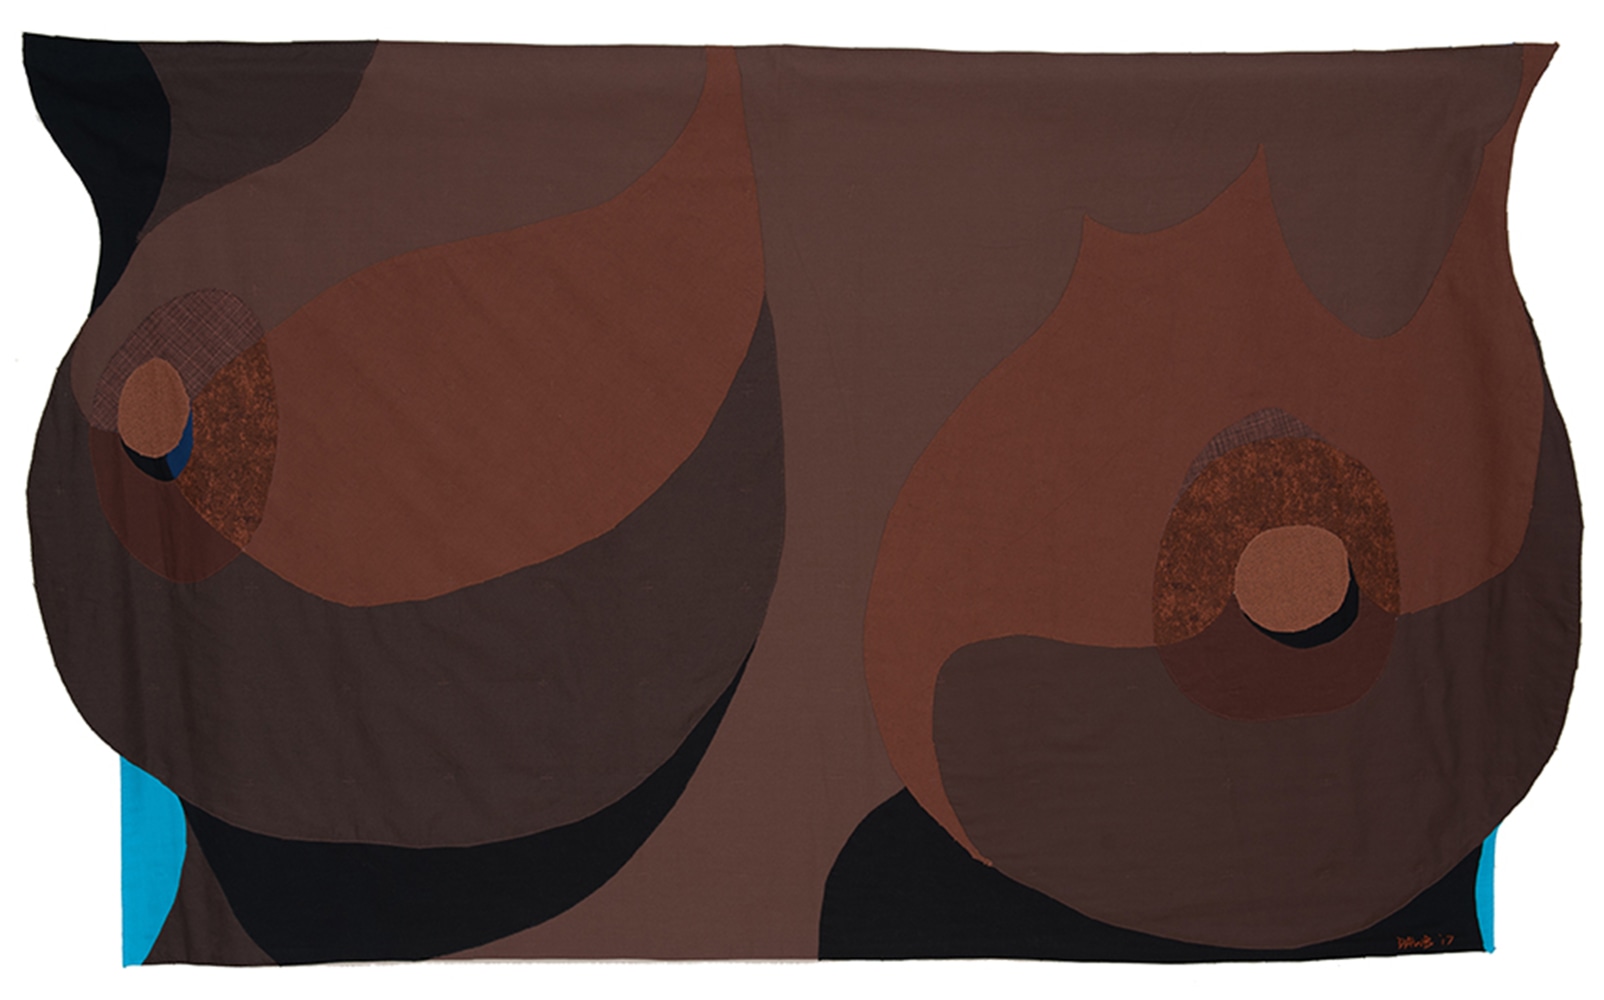 Dawn Williams Boyd
Nurture, 2017
Assorted fabrics
48 x 72 inches